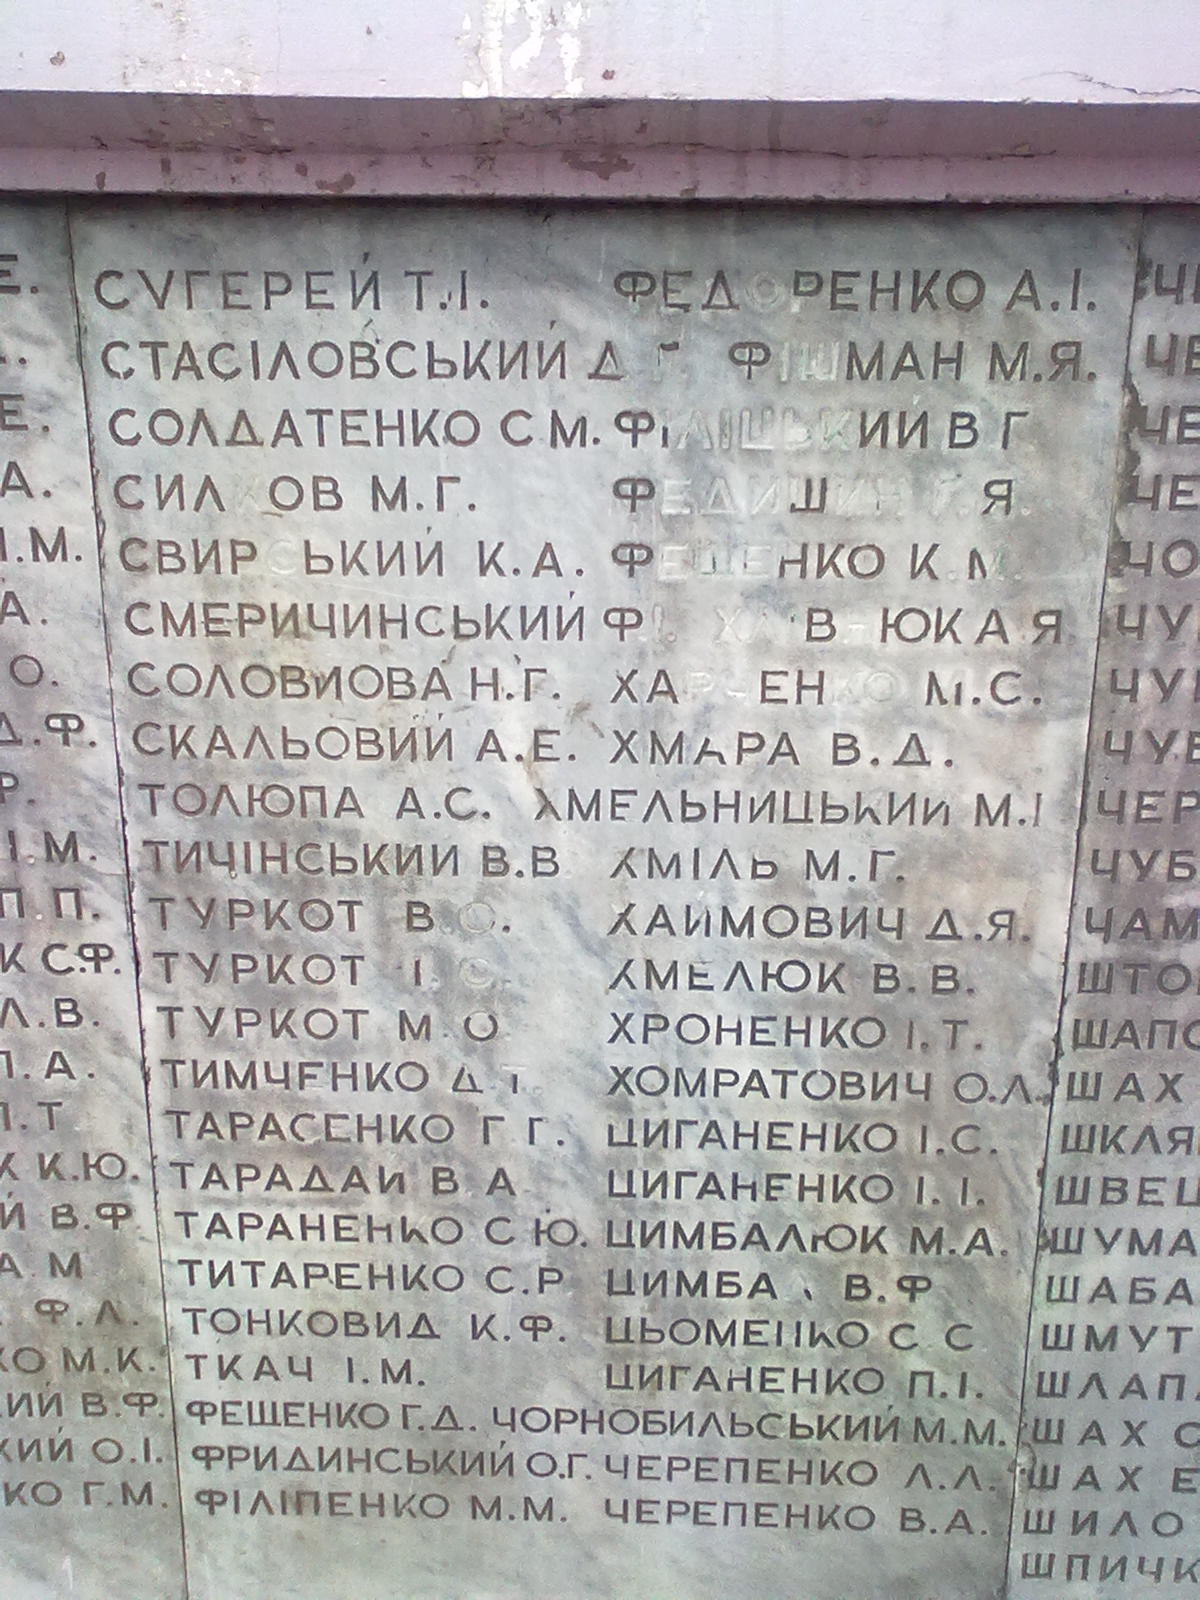 Братская могила в г. Тальное Тальновского района